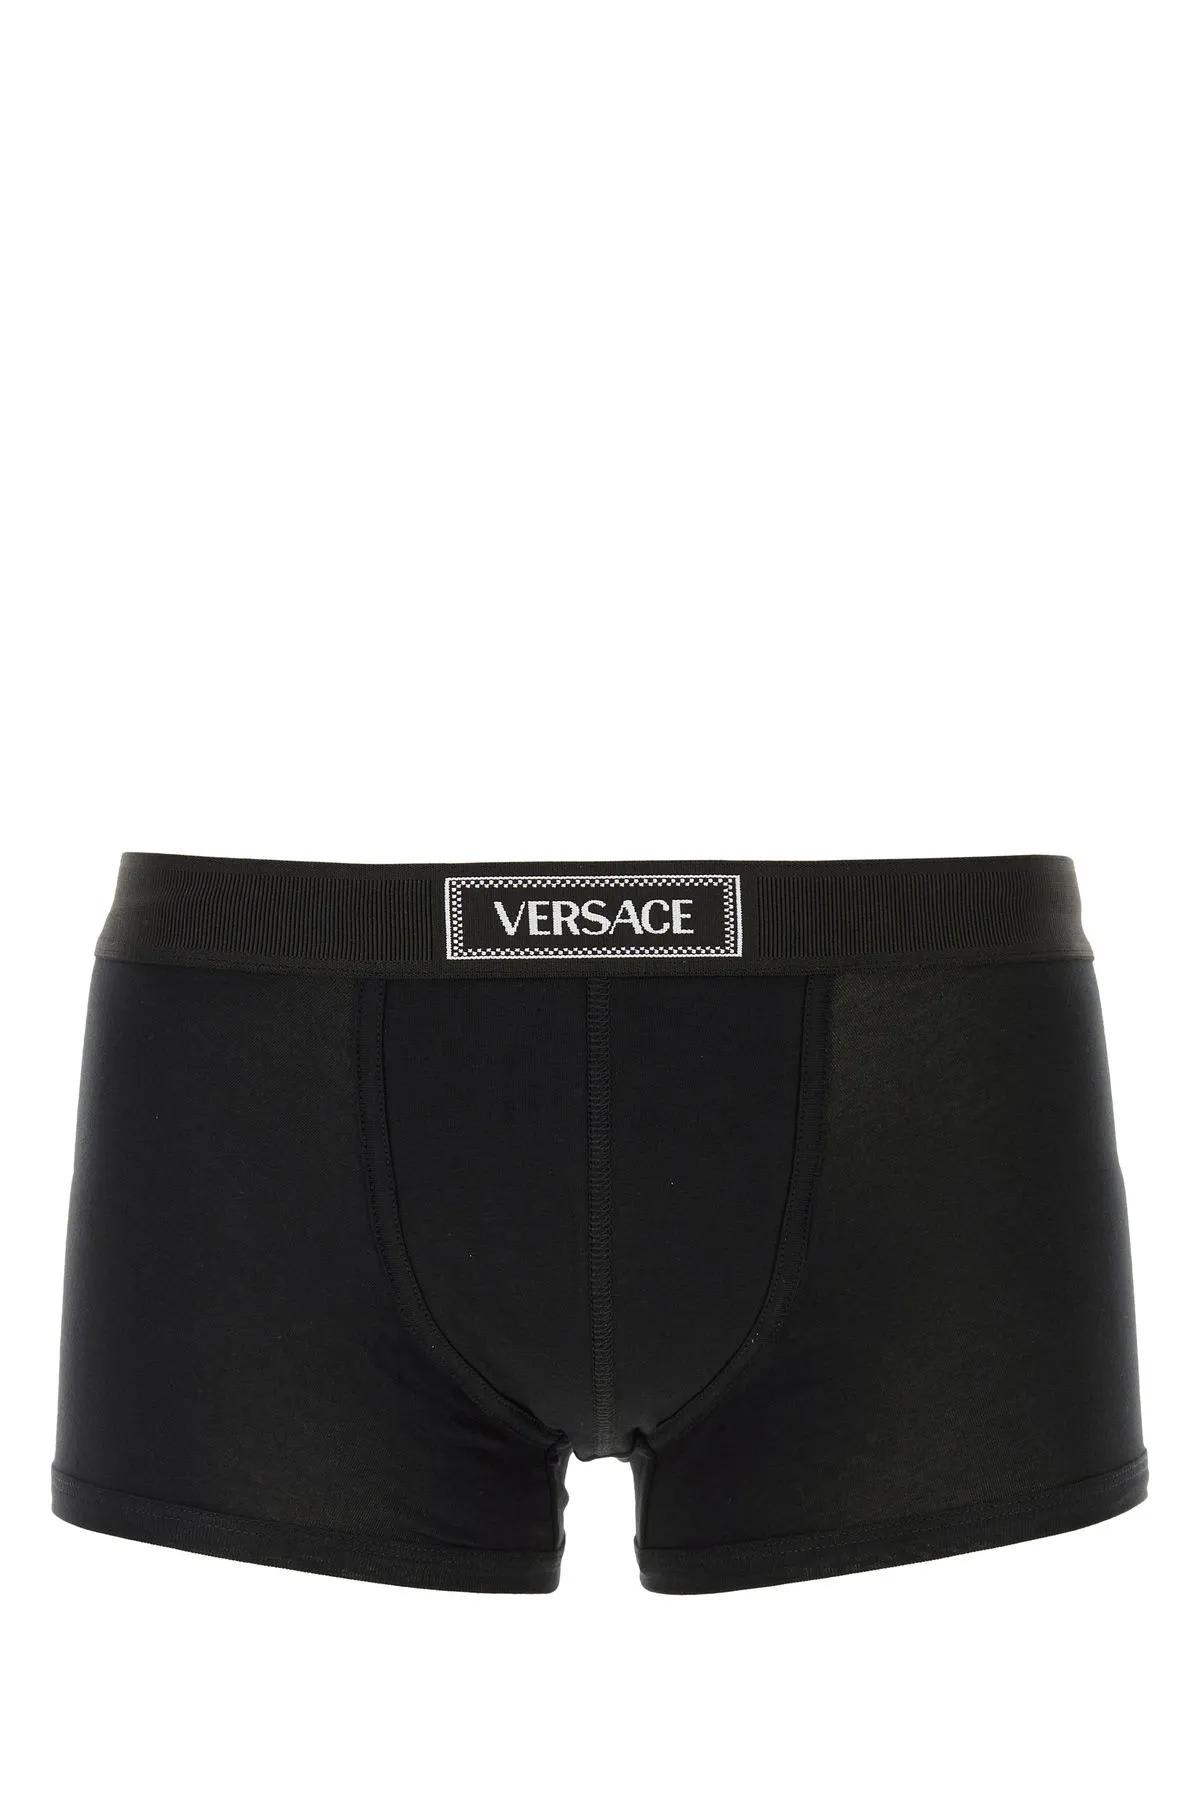 Shop Versace Black Stretch Cotton Boxer